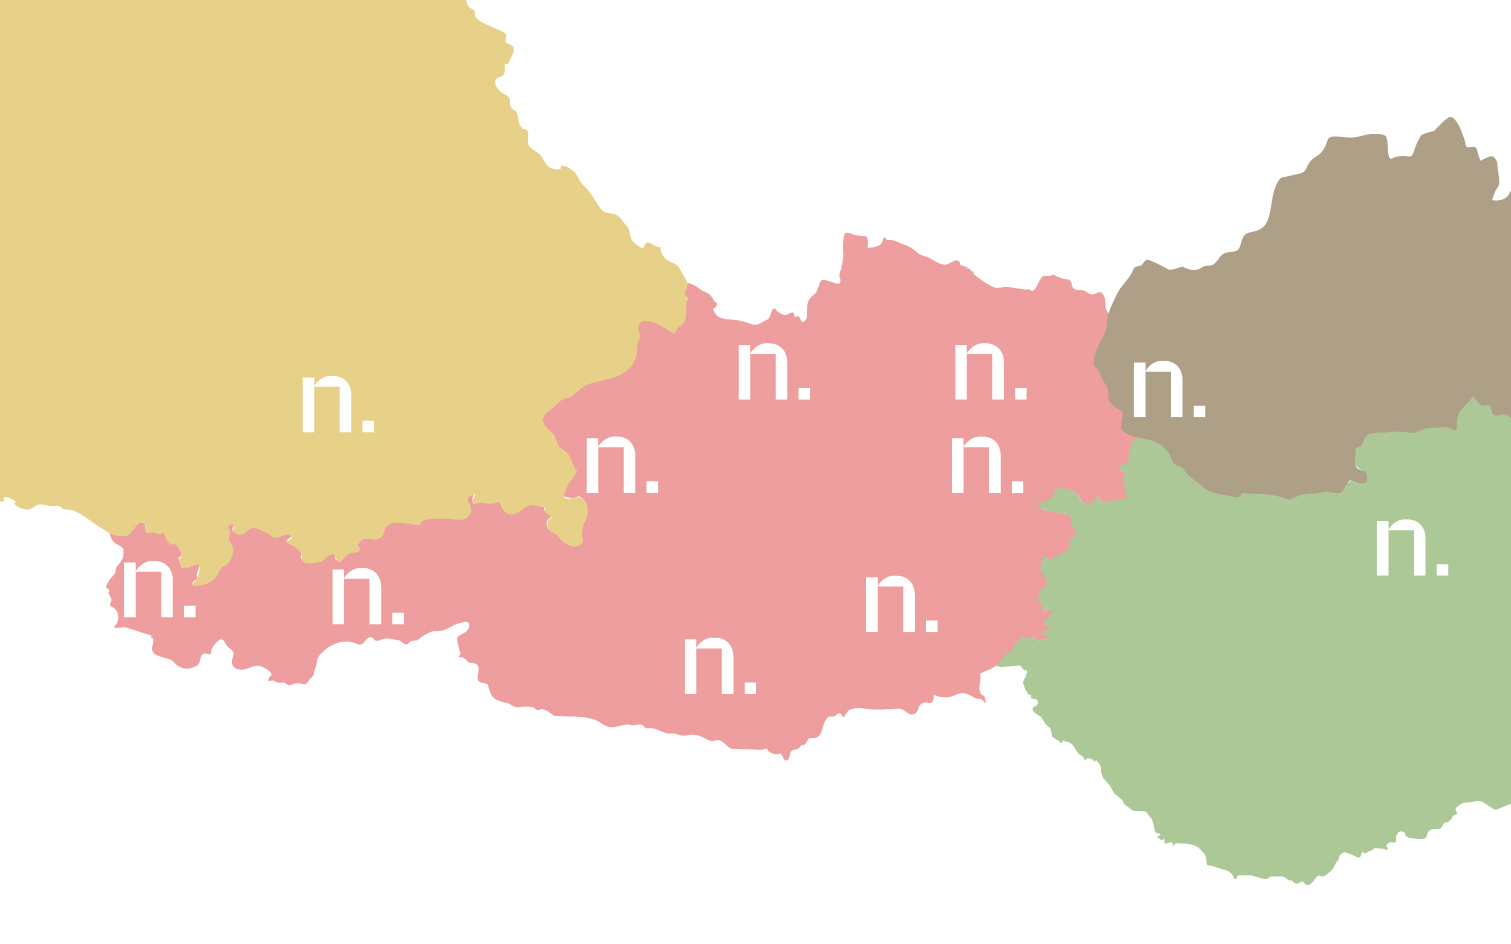 Landkarte von Österreich, Deutschland, Slowakei und Ungarn, auf der die Standorte der Schauräume eingezeichnet sind